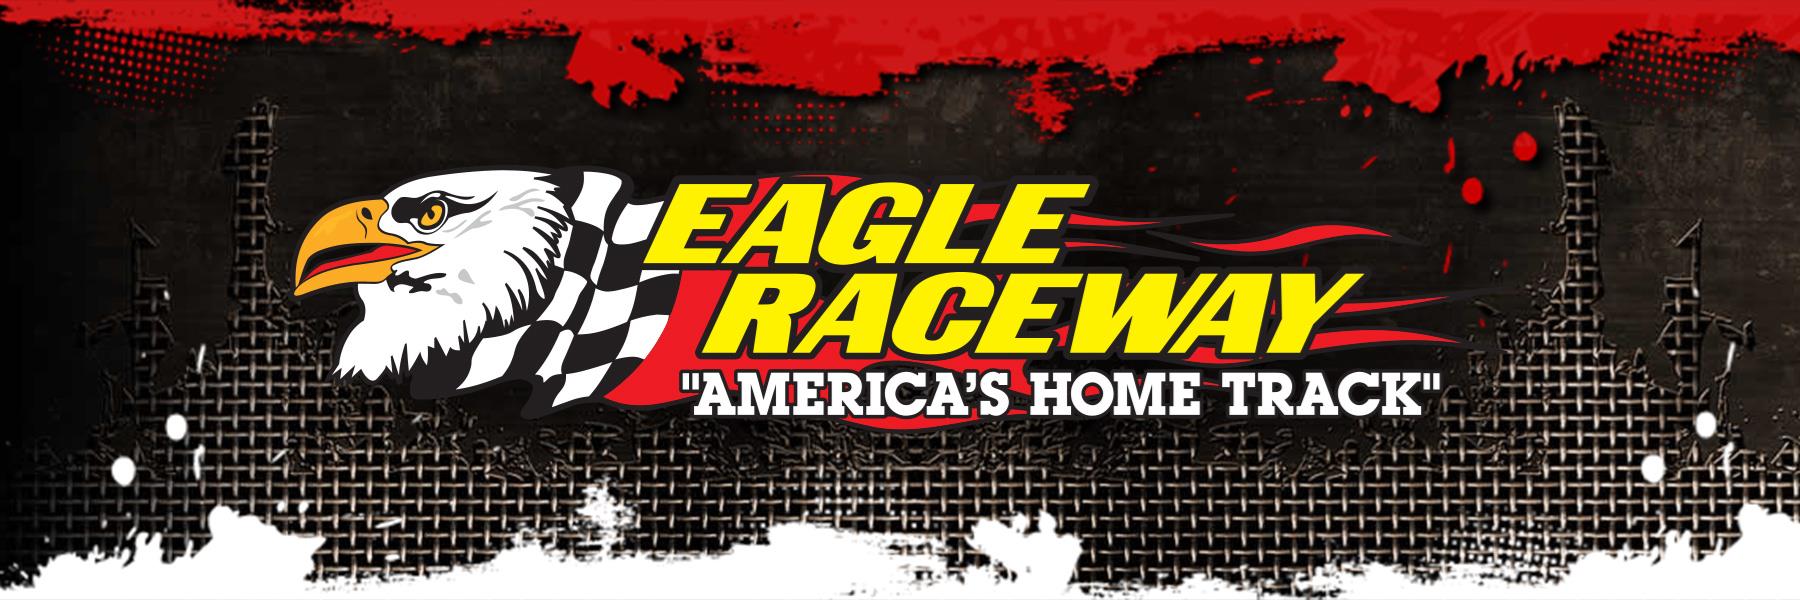 6/15/2013 - Eagle Raceway